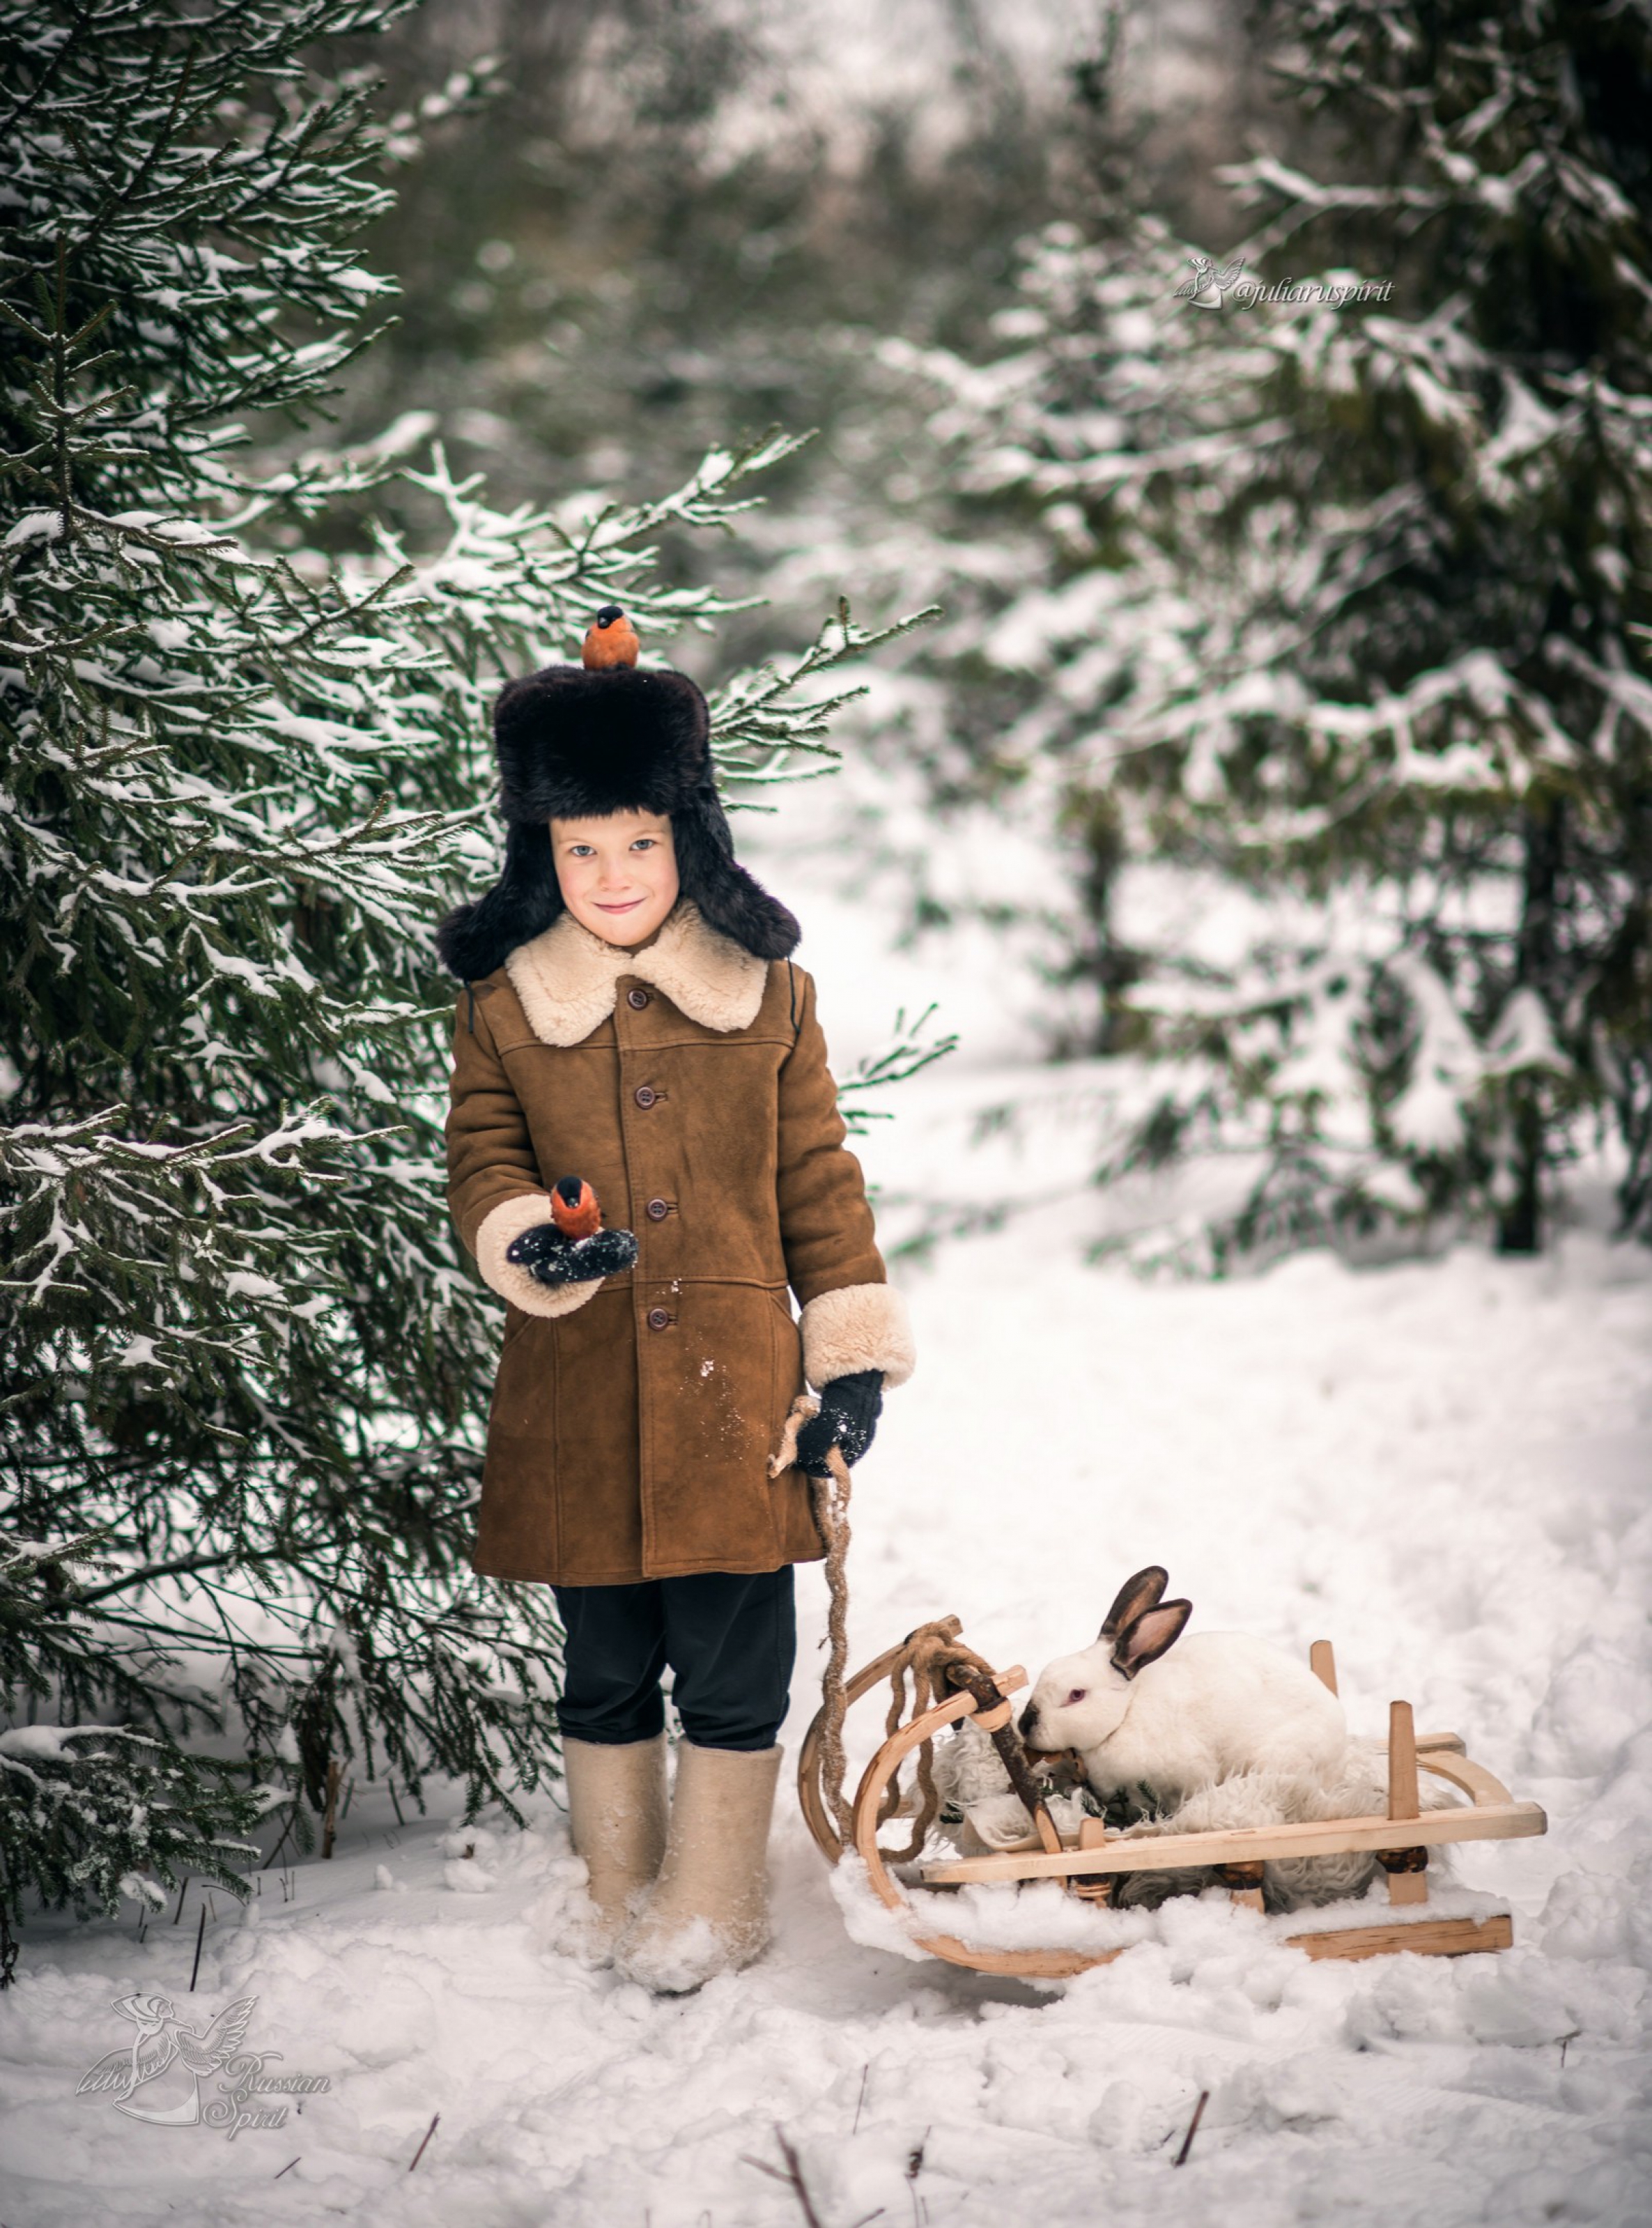 Мальчик в тулупе на фотосессии в русском стиле со снигирями